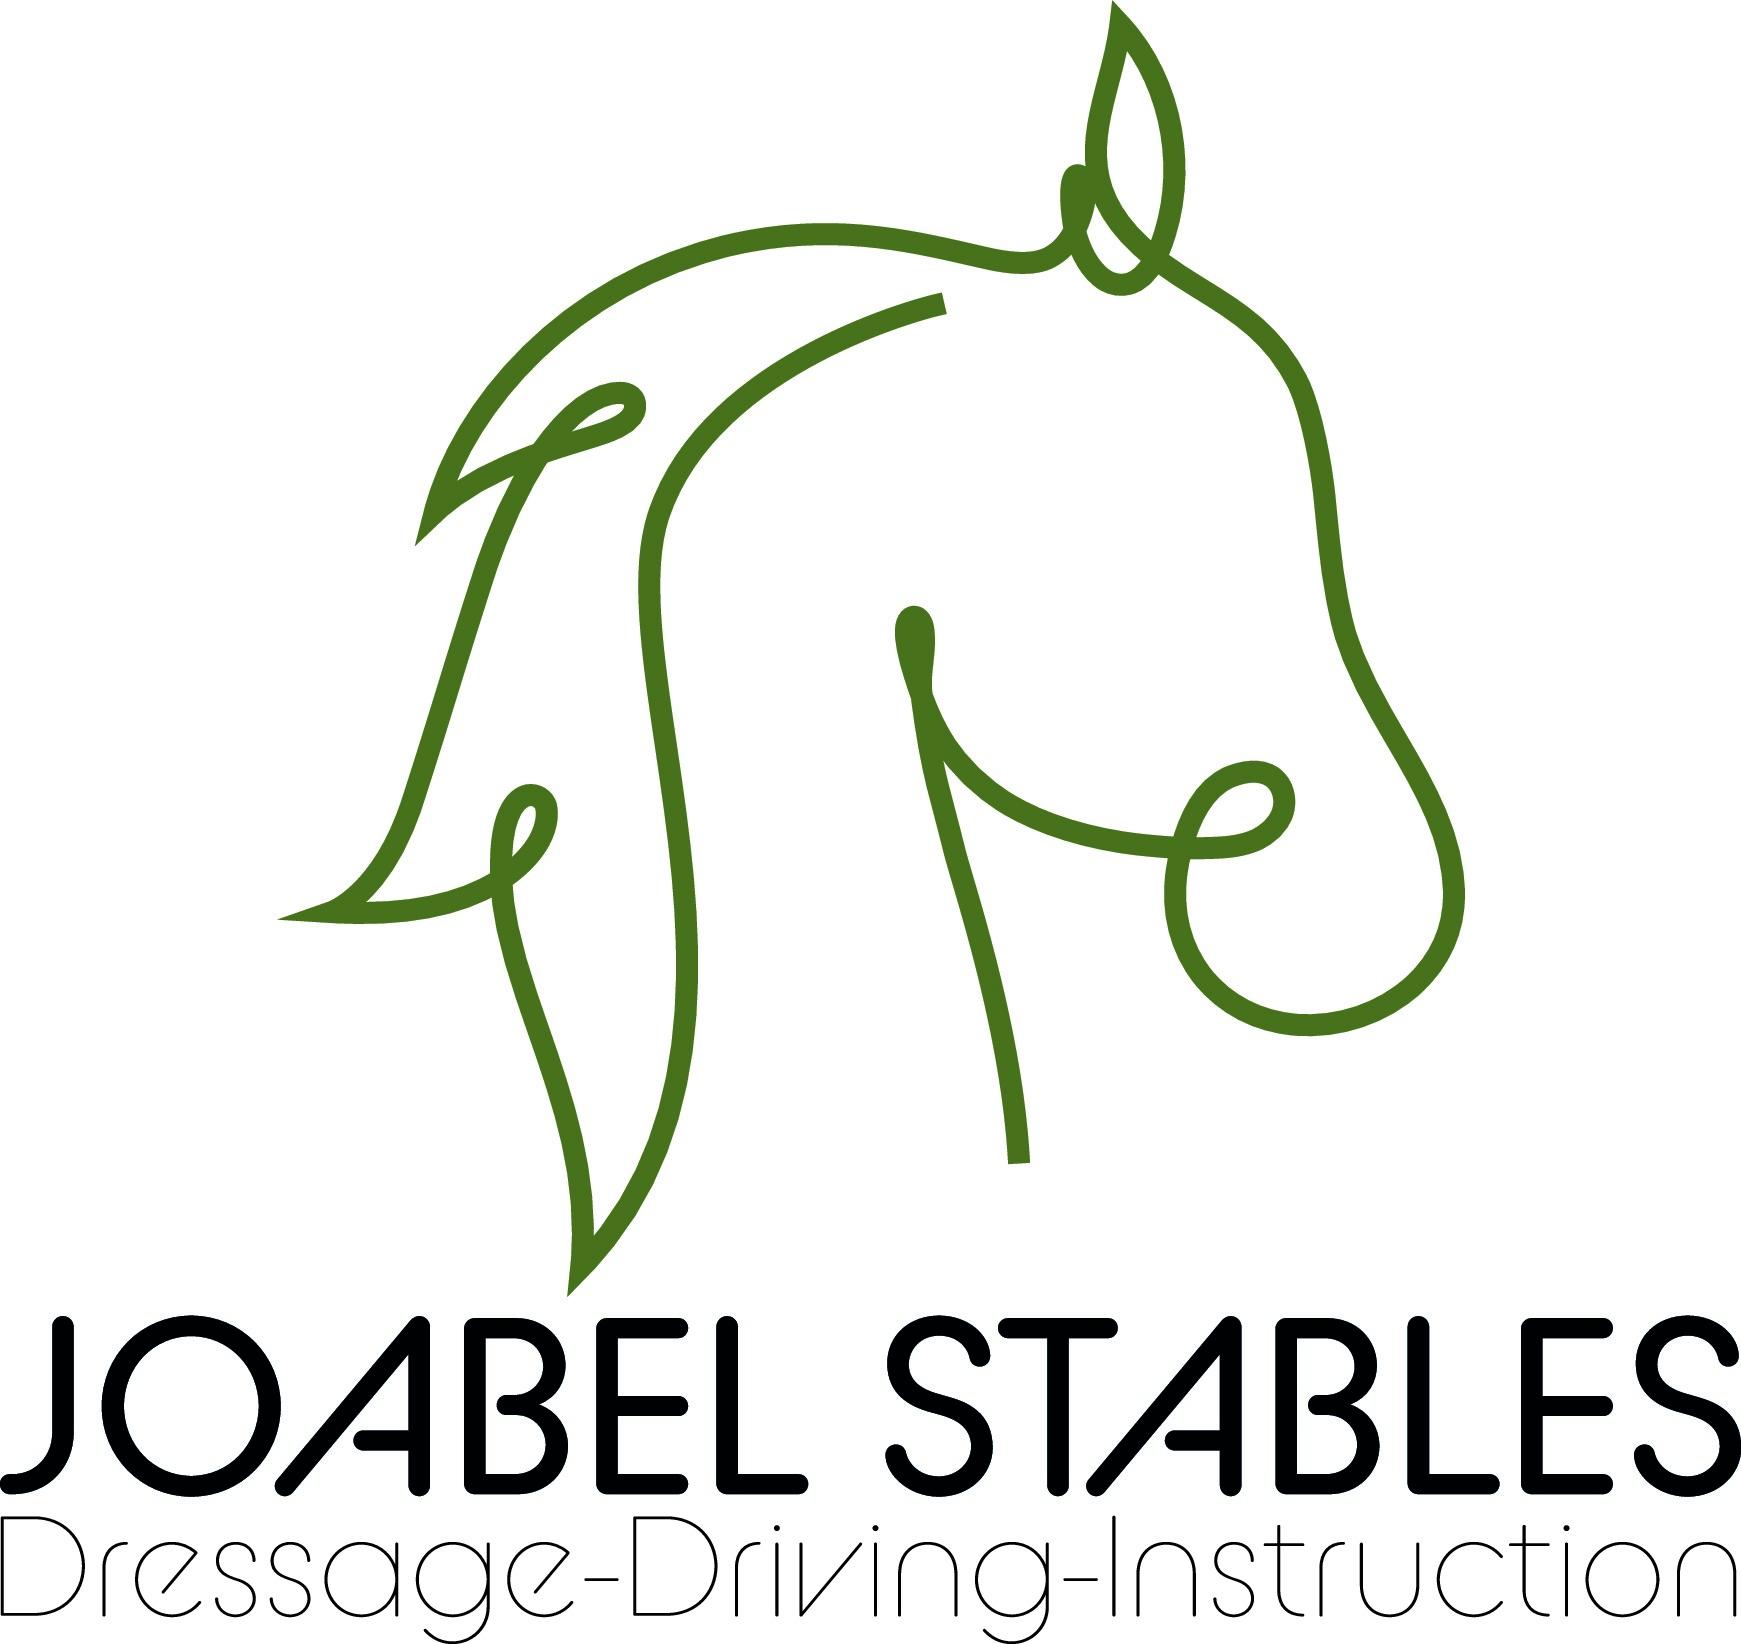 Joabel_Stables_logo_bewerkbaar.eps.jpg